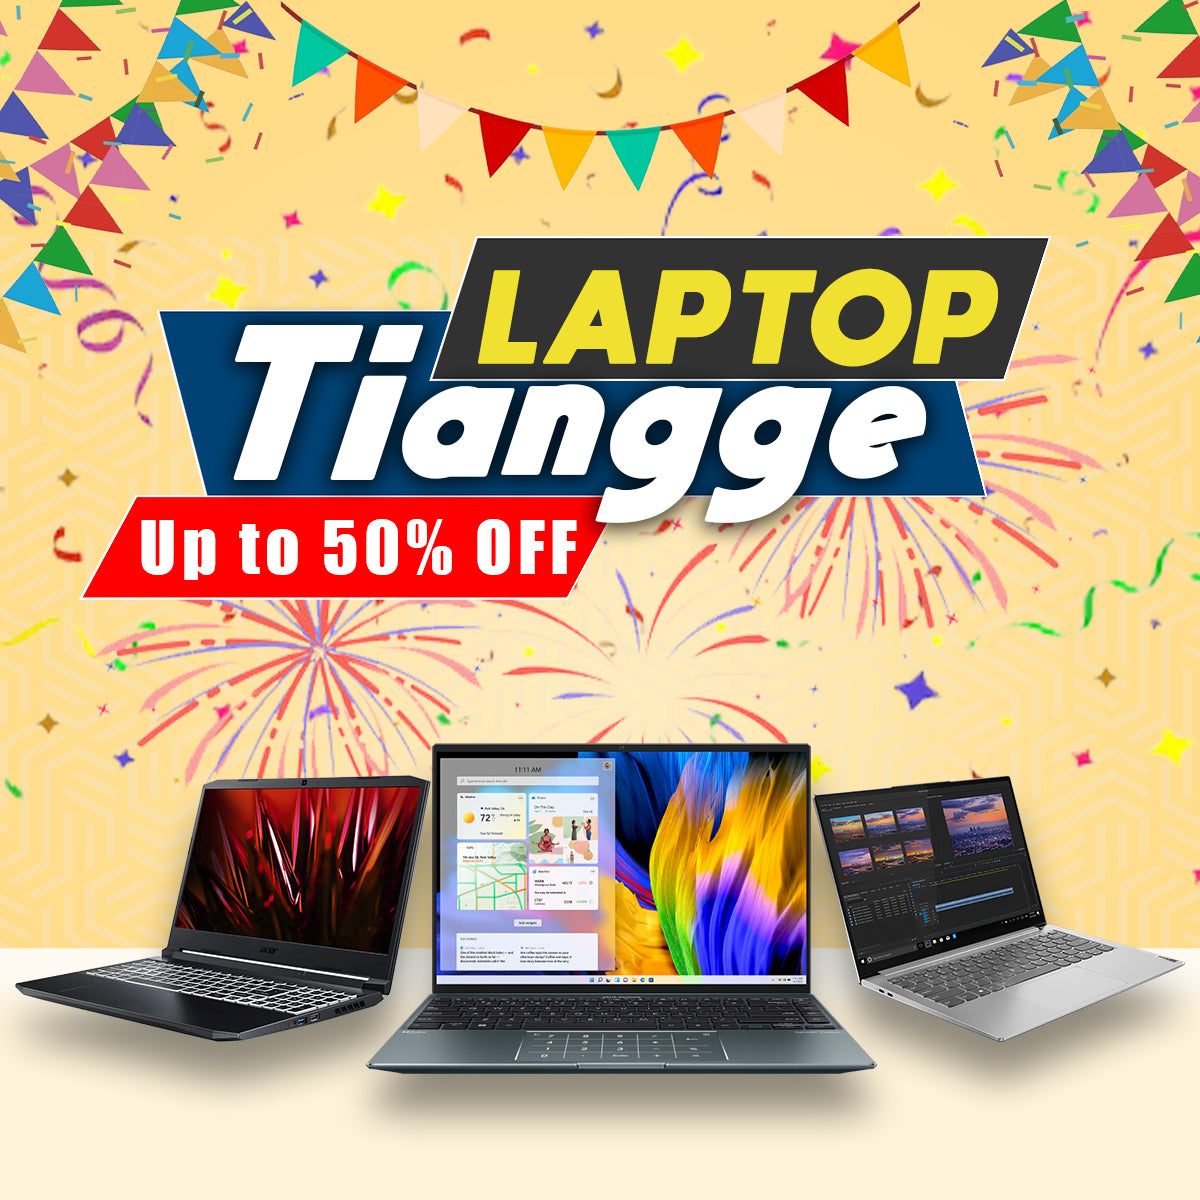 tiangge, cheap laptop, affordable laptop, gigahertz, cheap gaming laptop